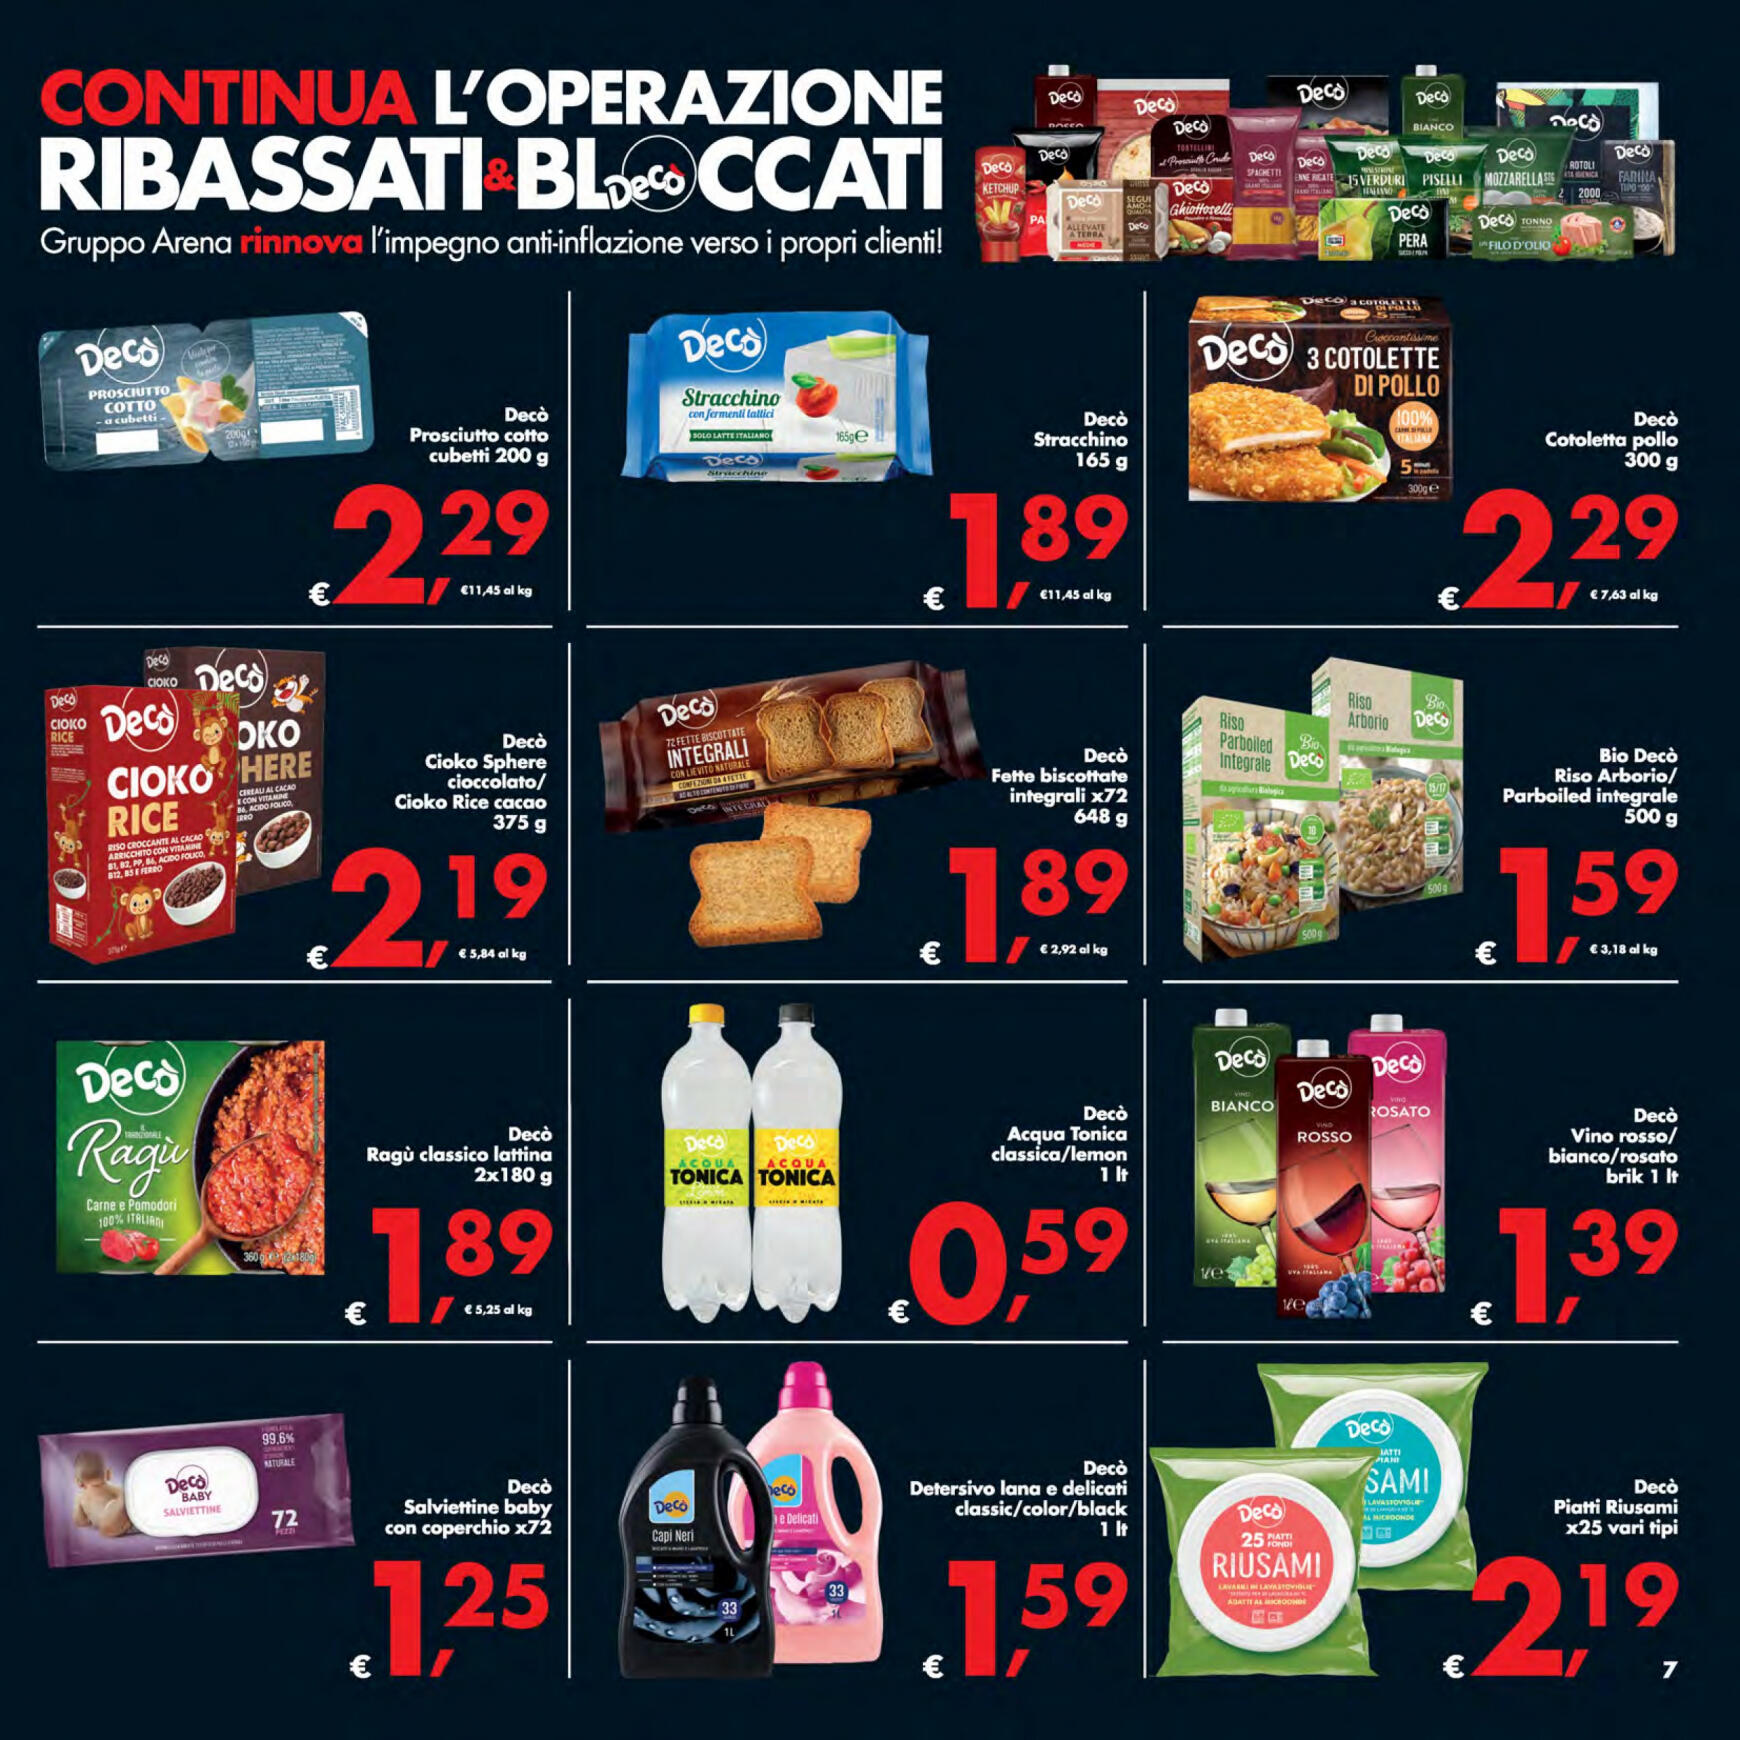 deco - Nuovo volantino Decò - Supermercati/Maxistore/Local 23.04. - 02.05. - page: 7